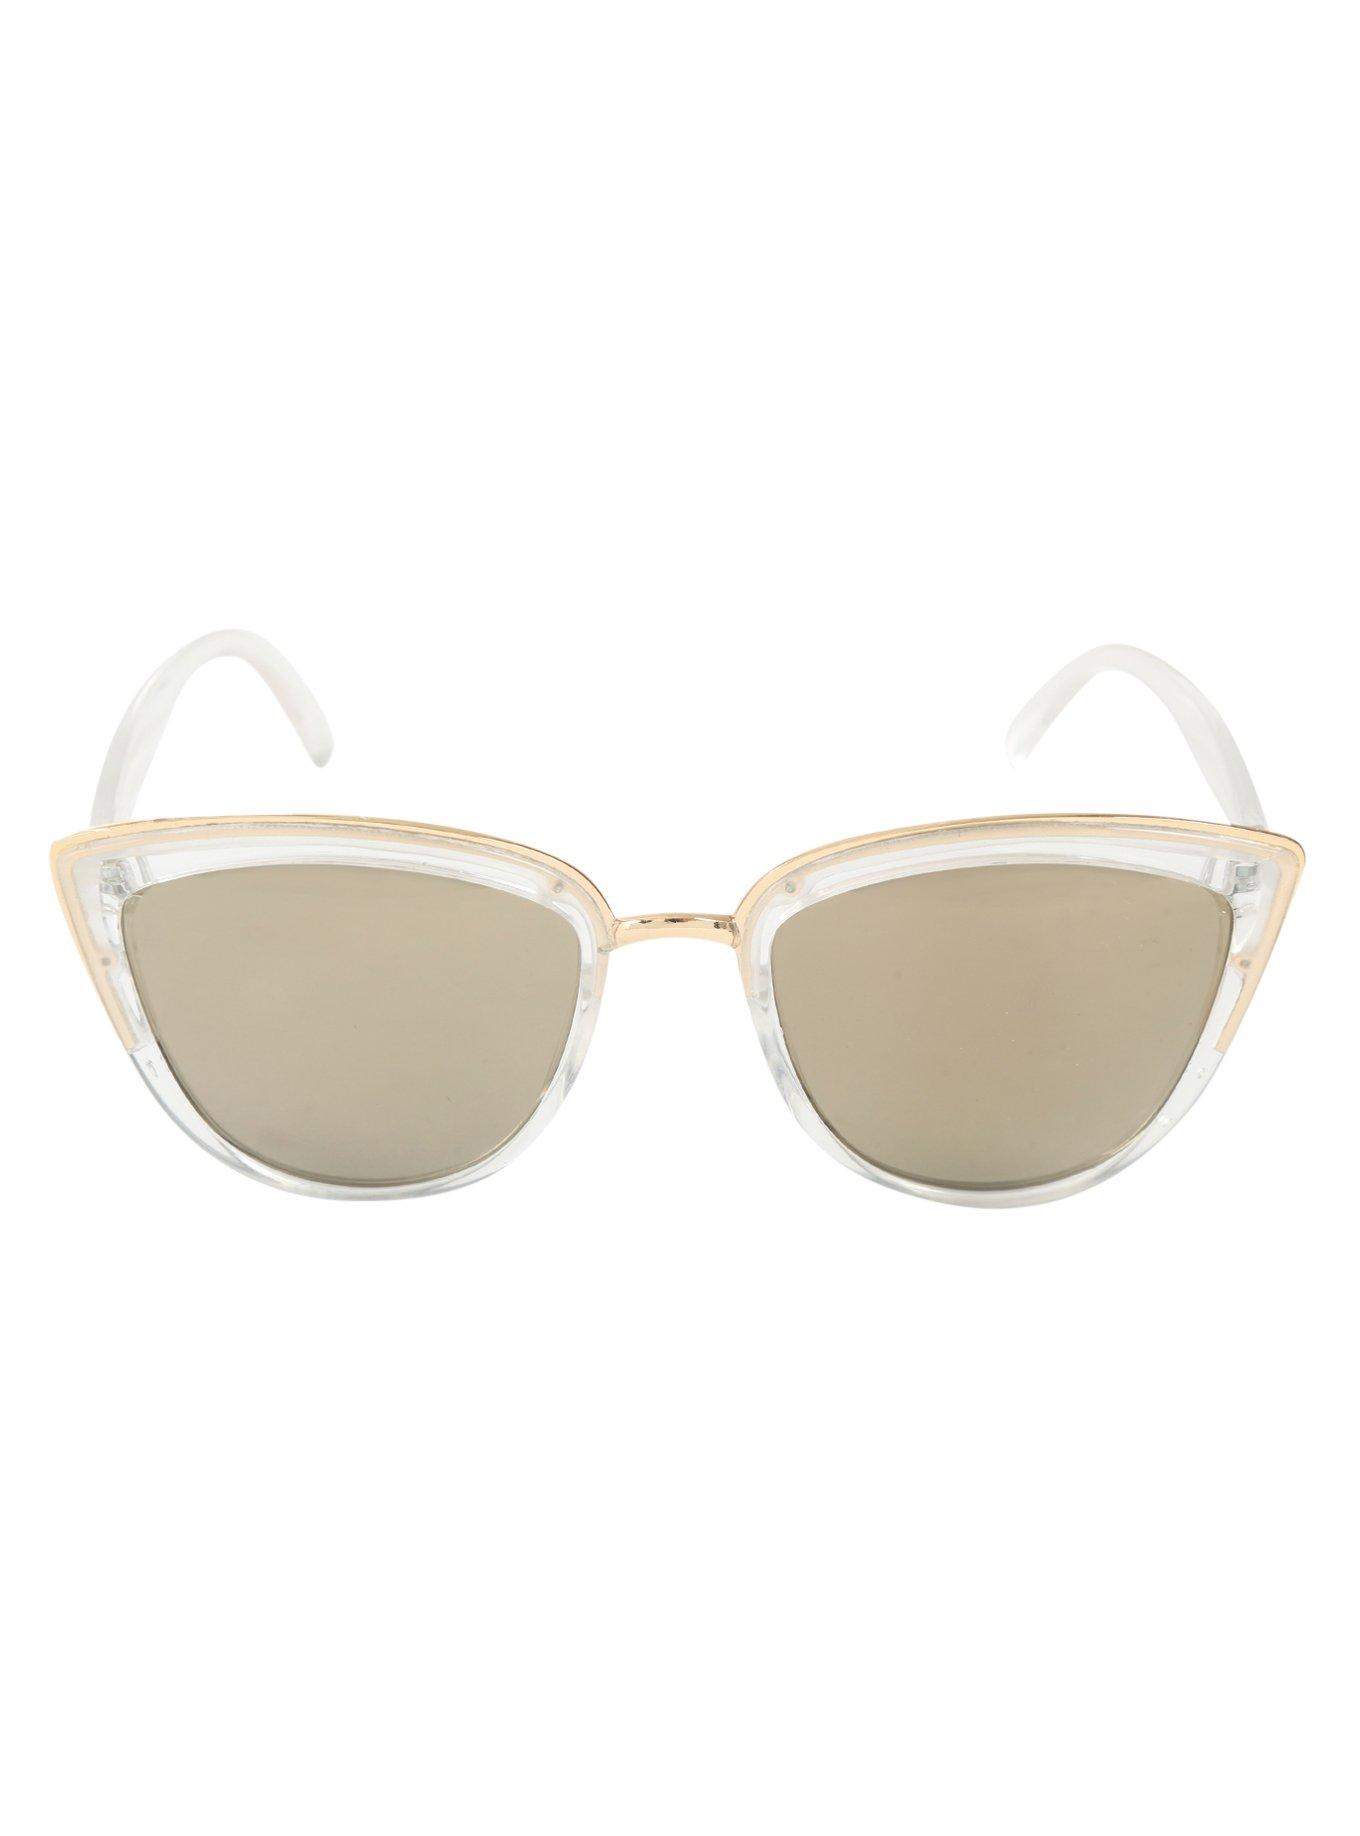 Translucent Gold Accent Metal Bridge Sunglasses, , alternate